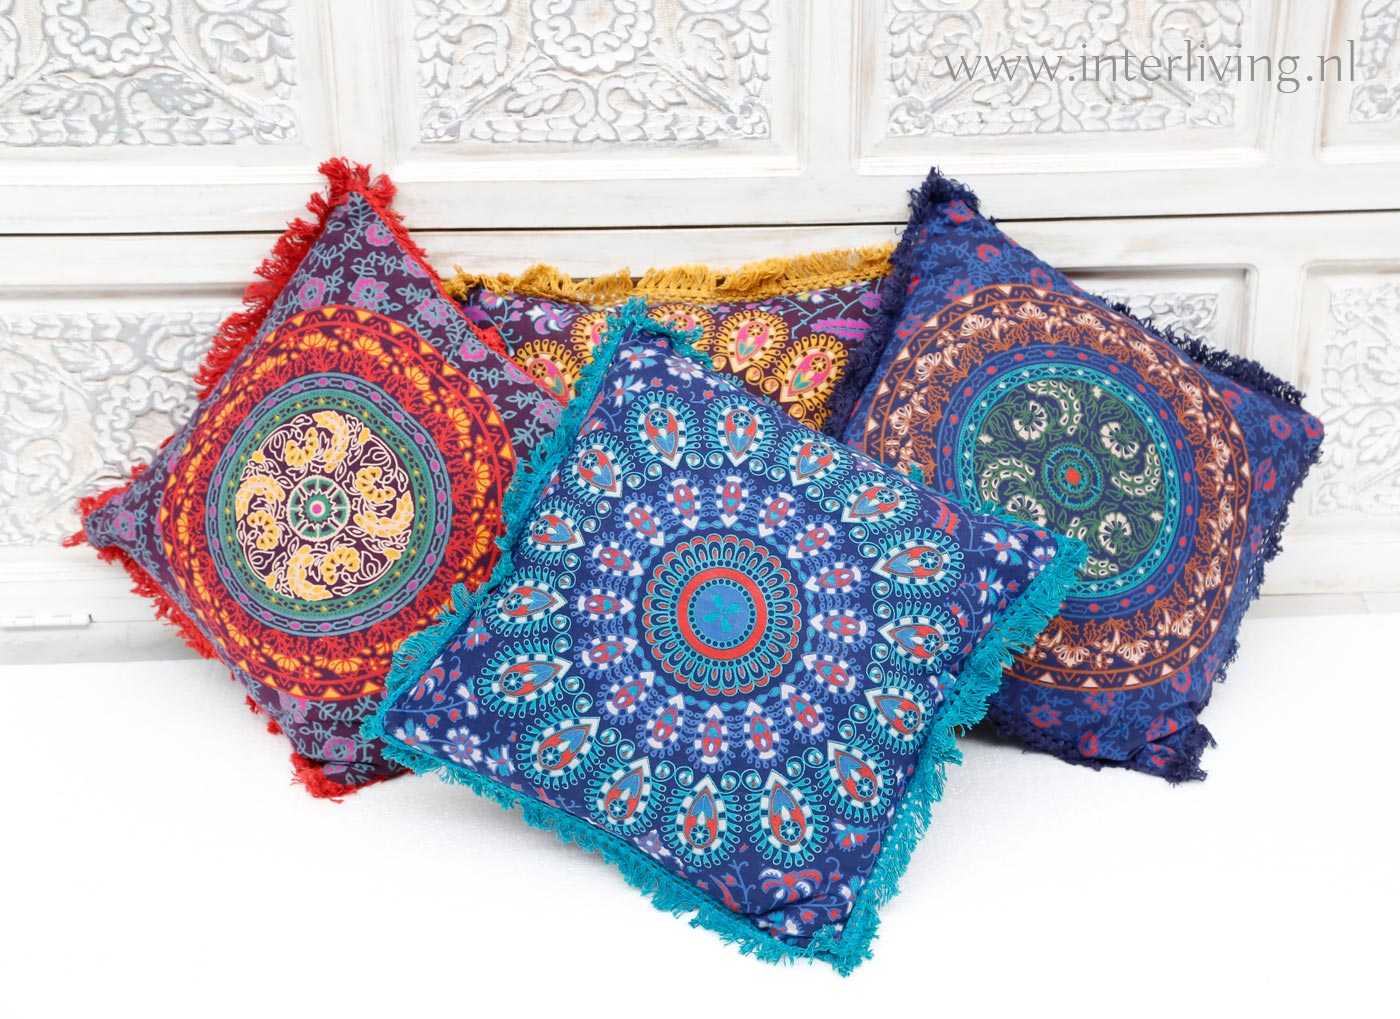 ondernemen Spreek luid Duidelijk maken Mandala kussens uit India - blauw , turquoise, geel, rood - sierkussen